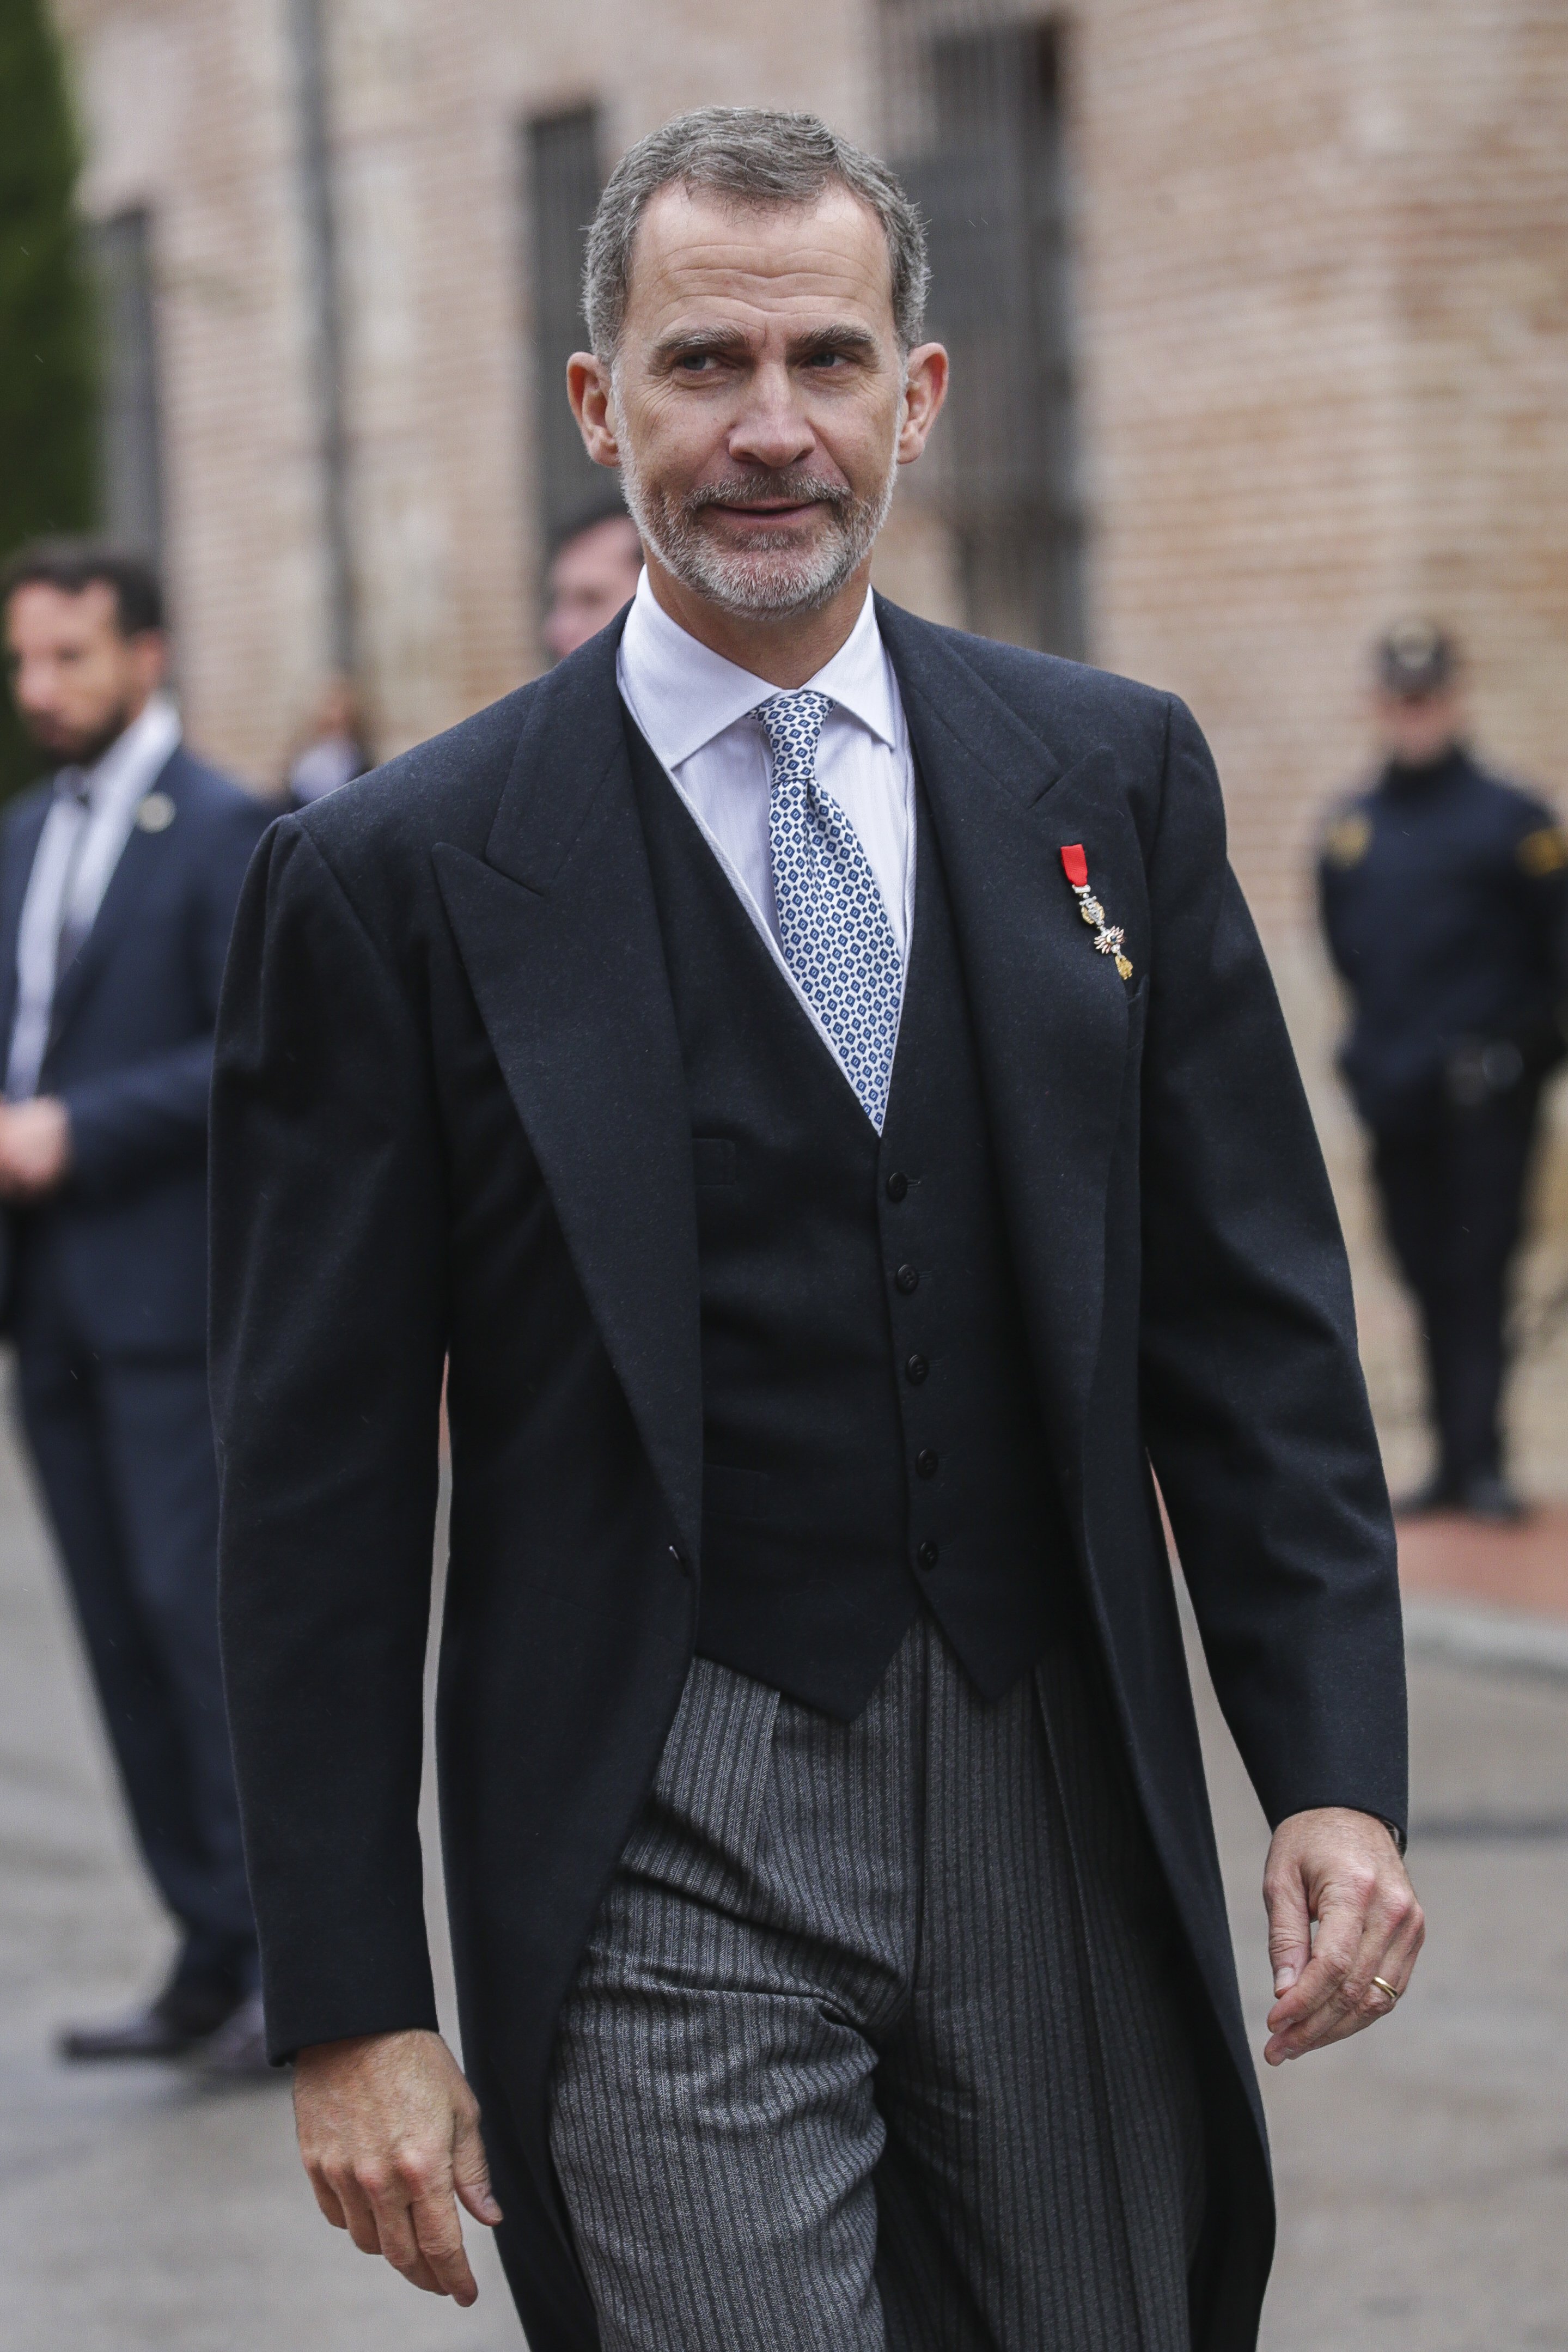 Jaime Peñafiel entierra a Felipe VI: "La monarquía no es democrática"